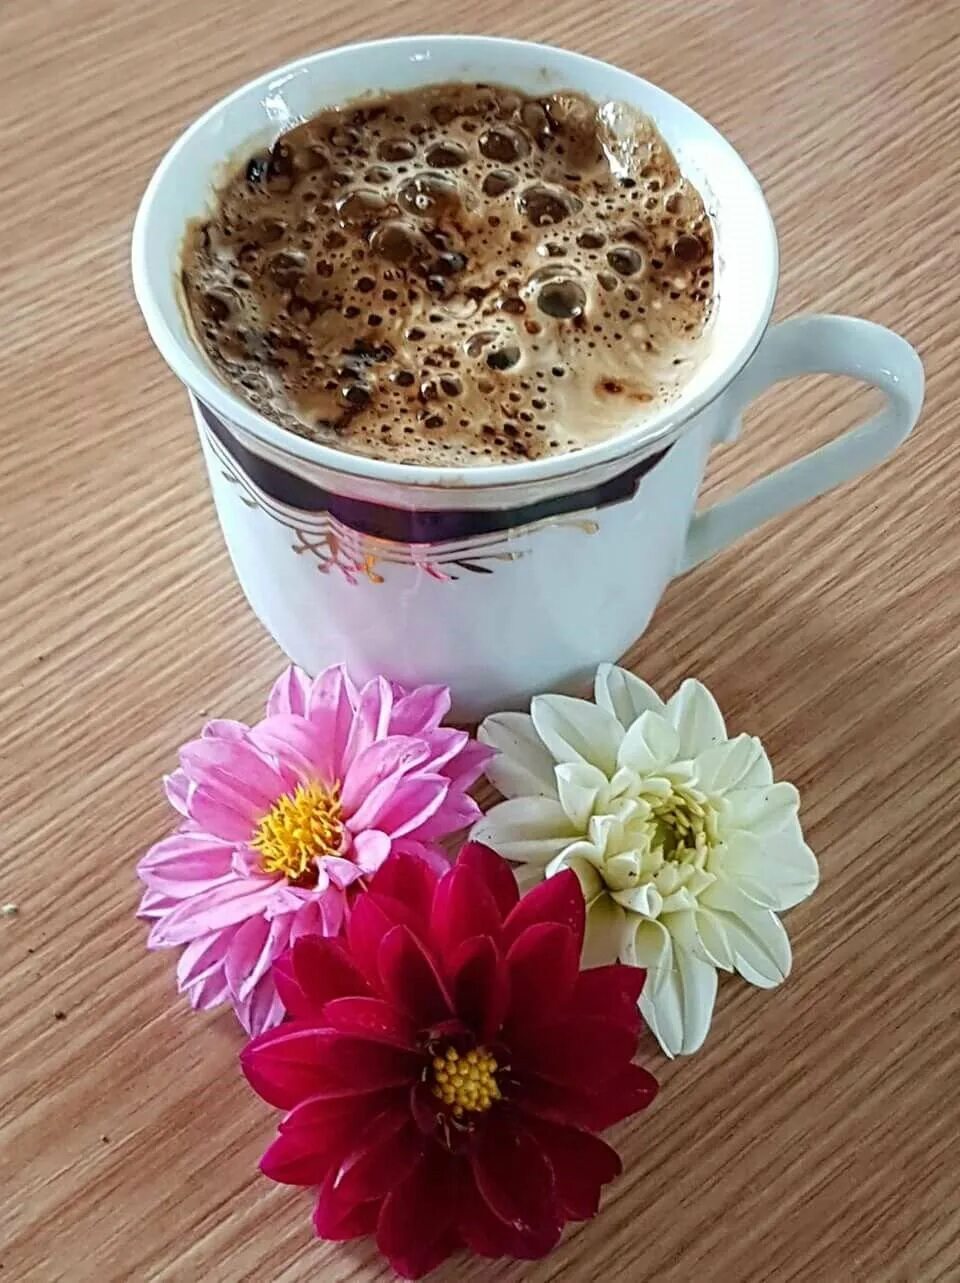 Картинка доброе утро с кофе и цветами. Кофе и цветы. Красивые цветы в чашке. Чашка утреннего кофе. Кофе с цветами.